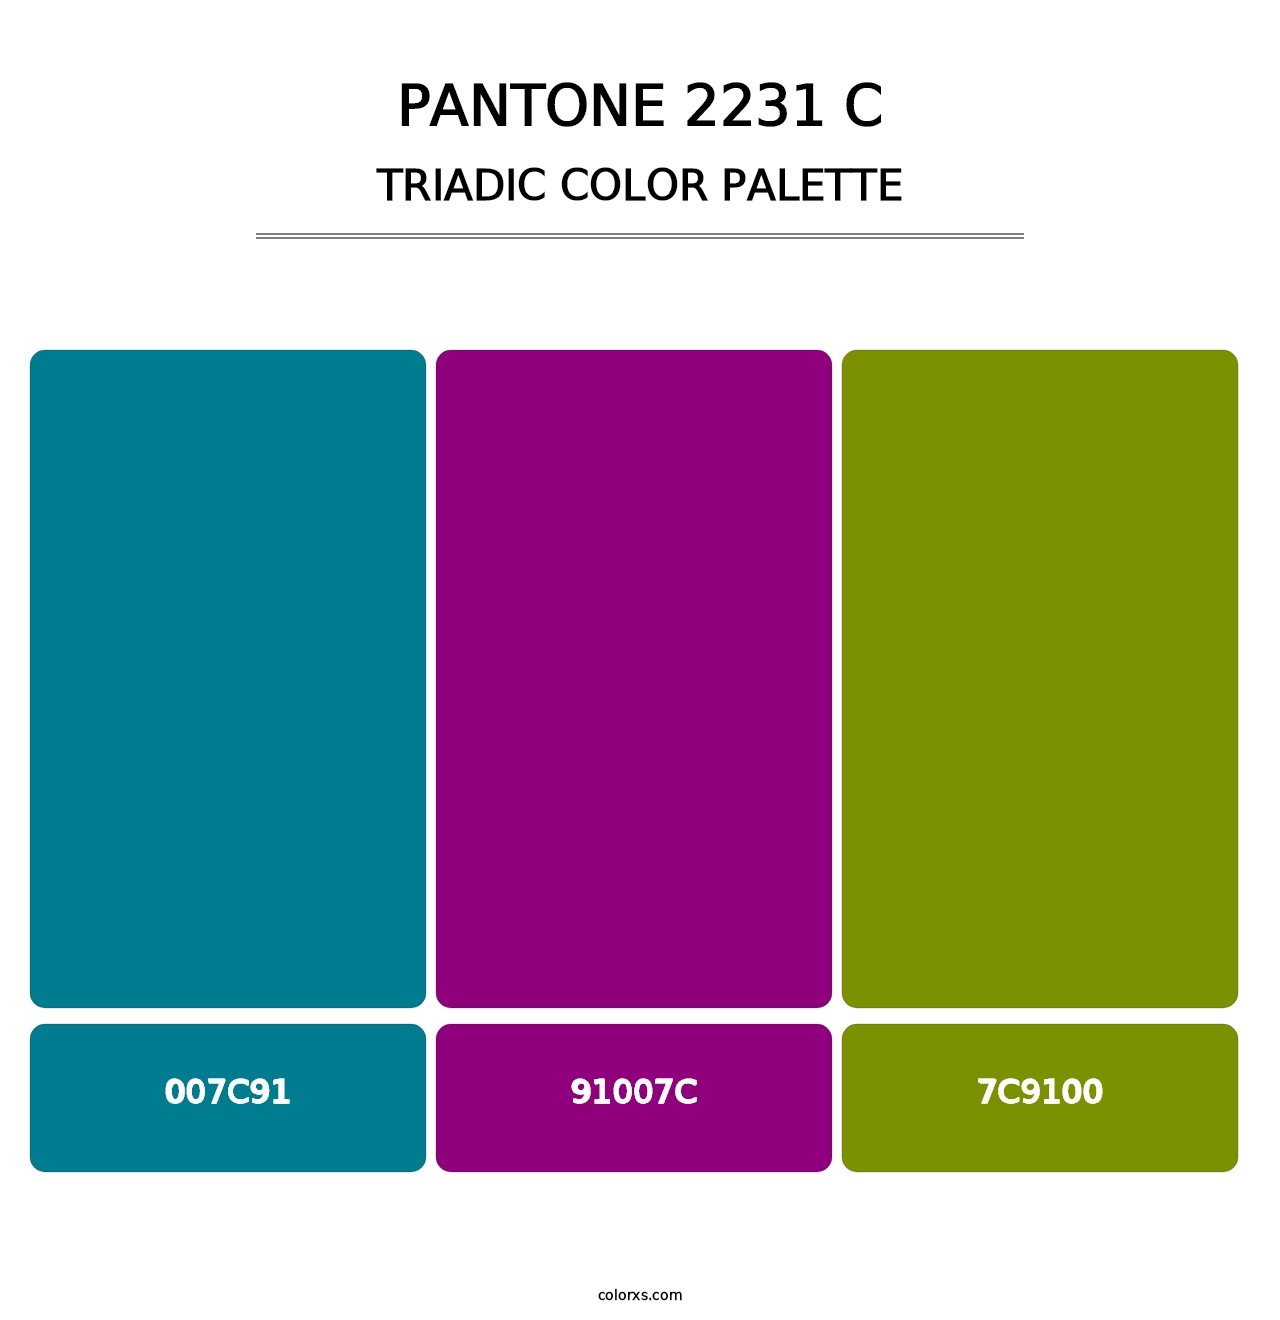 PANTONE 2231 C - Triadic Color Palette